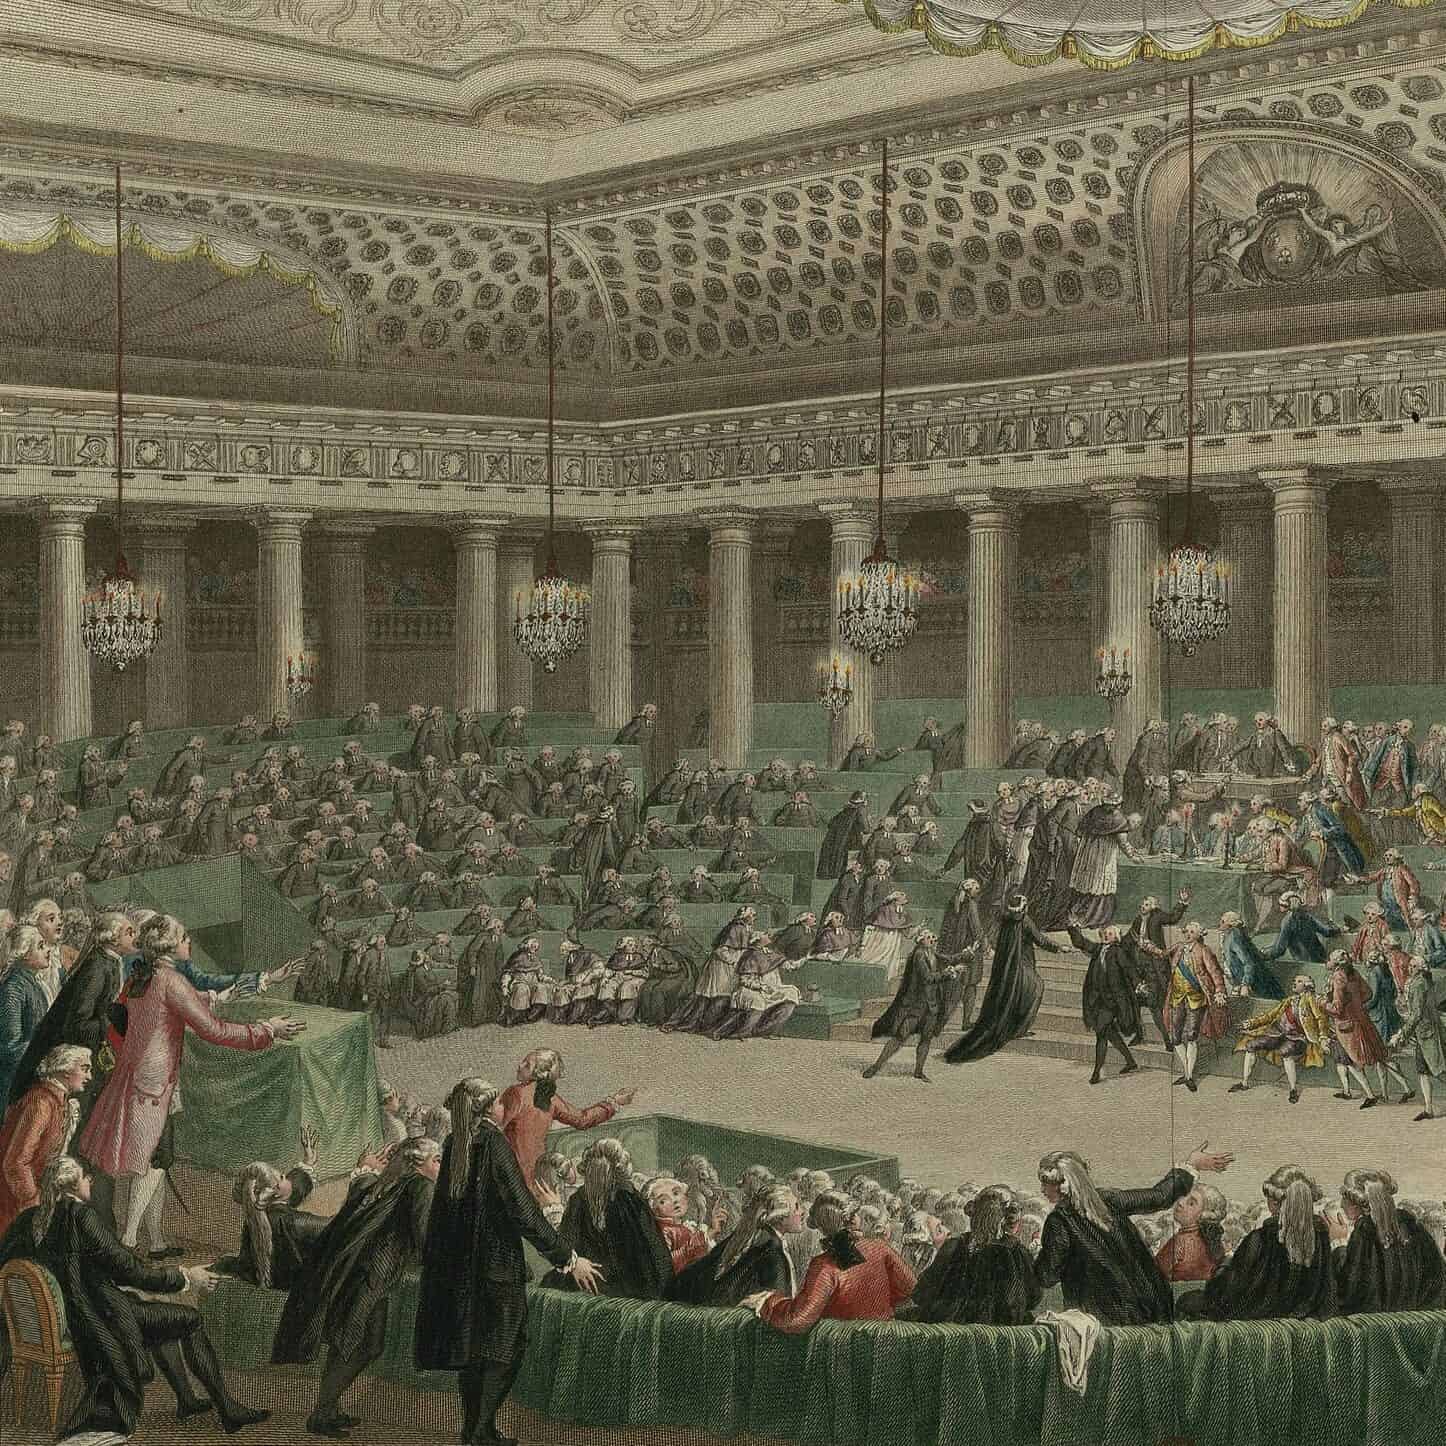 Charles Monnet - Assemblée nationale - abandon de tous les privilèges à Versailles, séance de la nuit du 4 au 5 août 1789